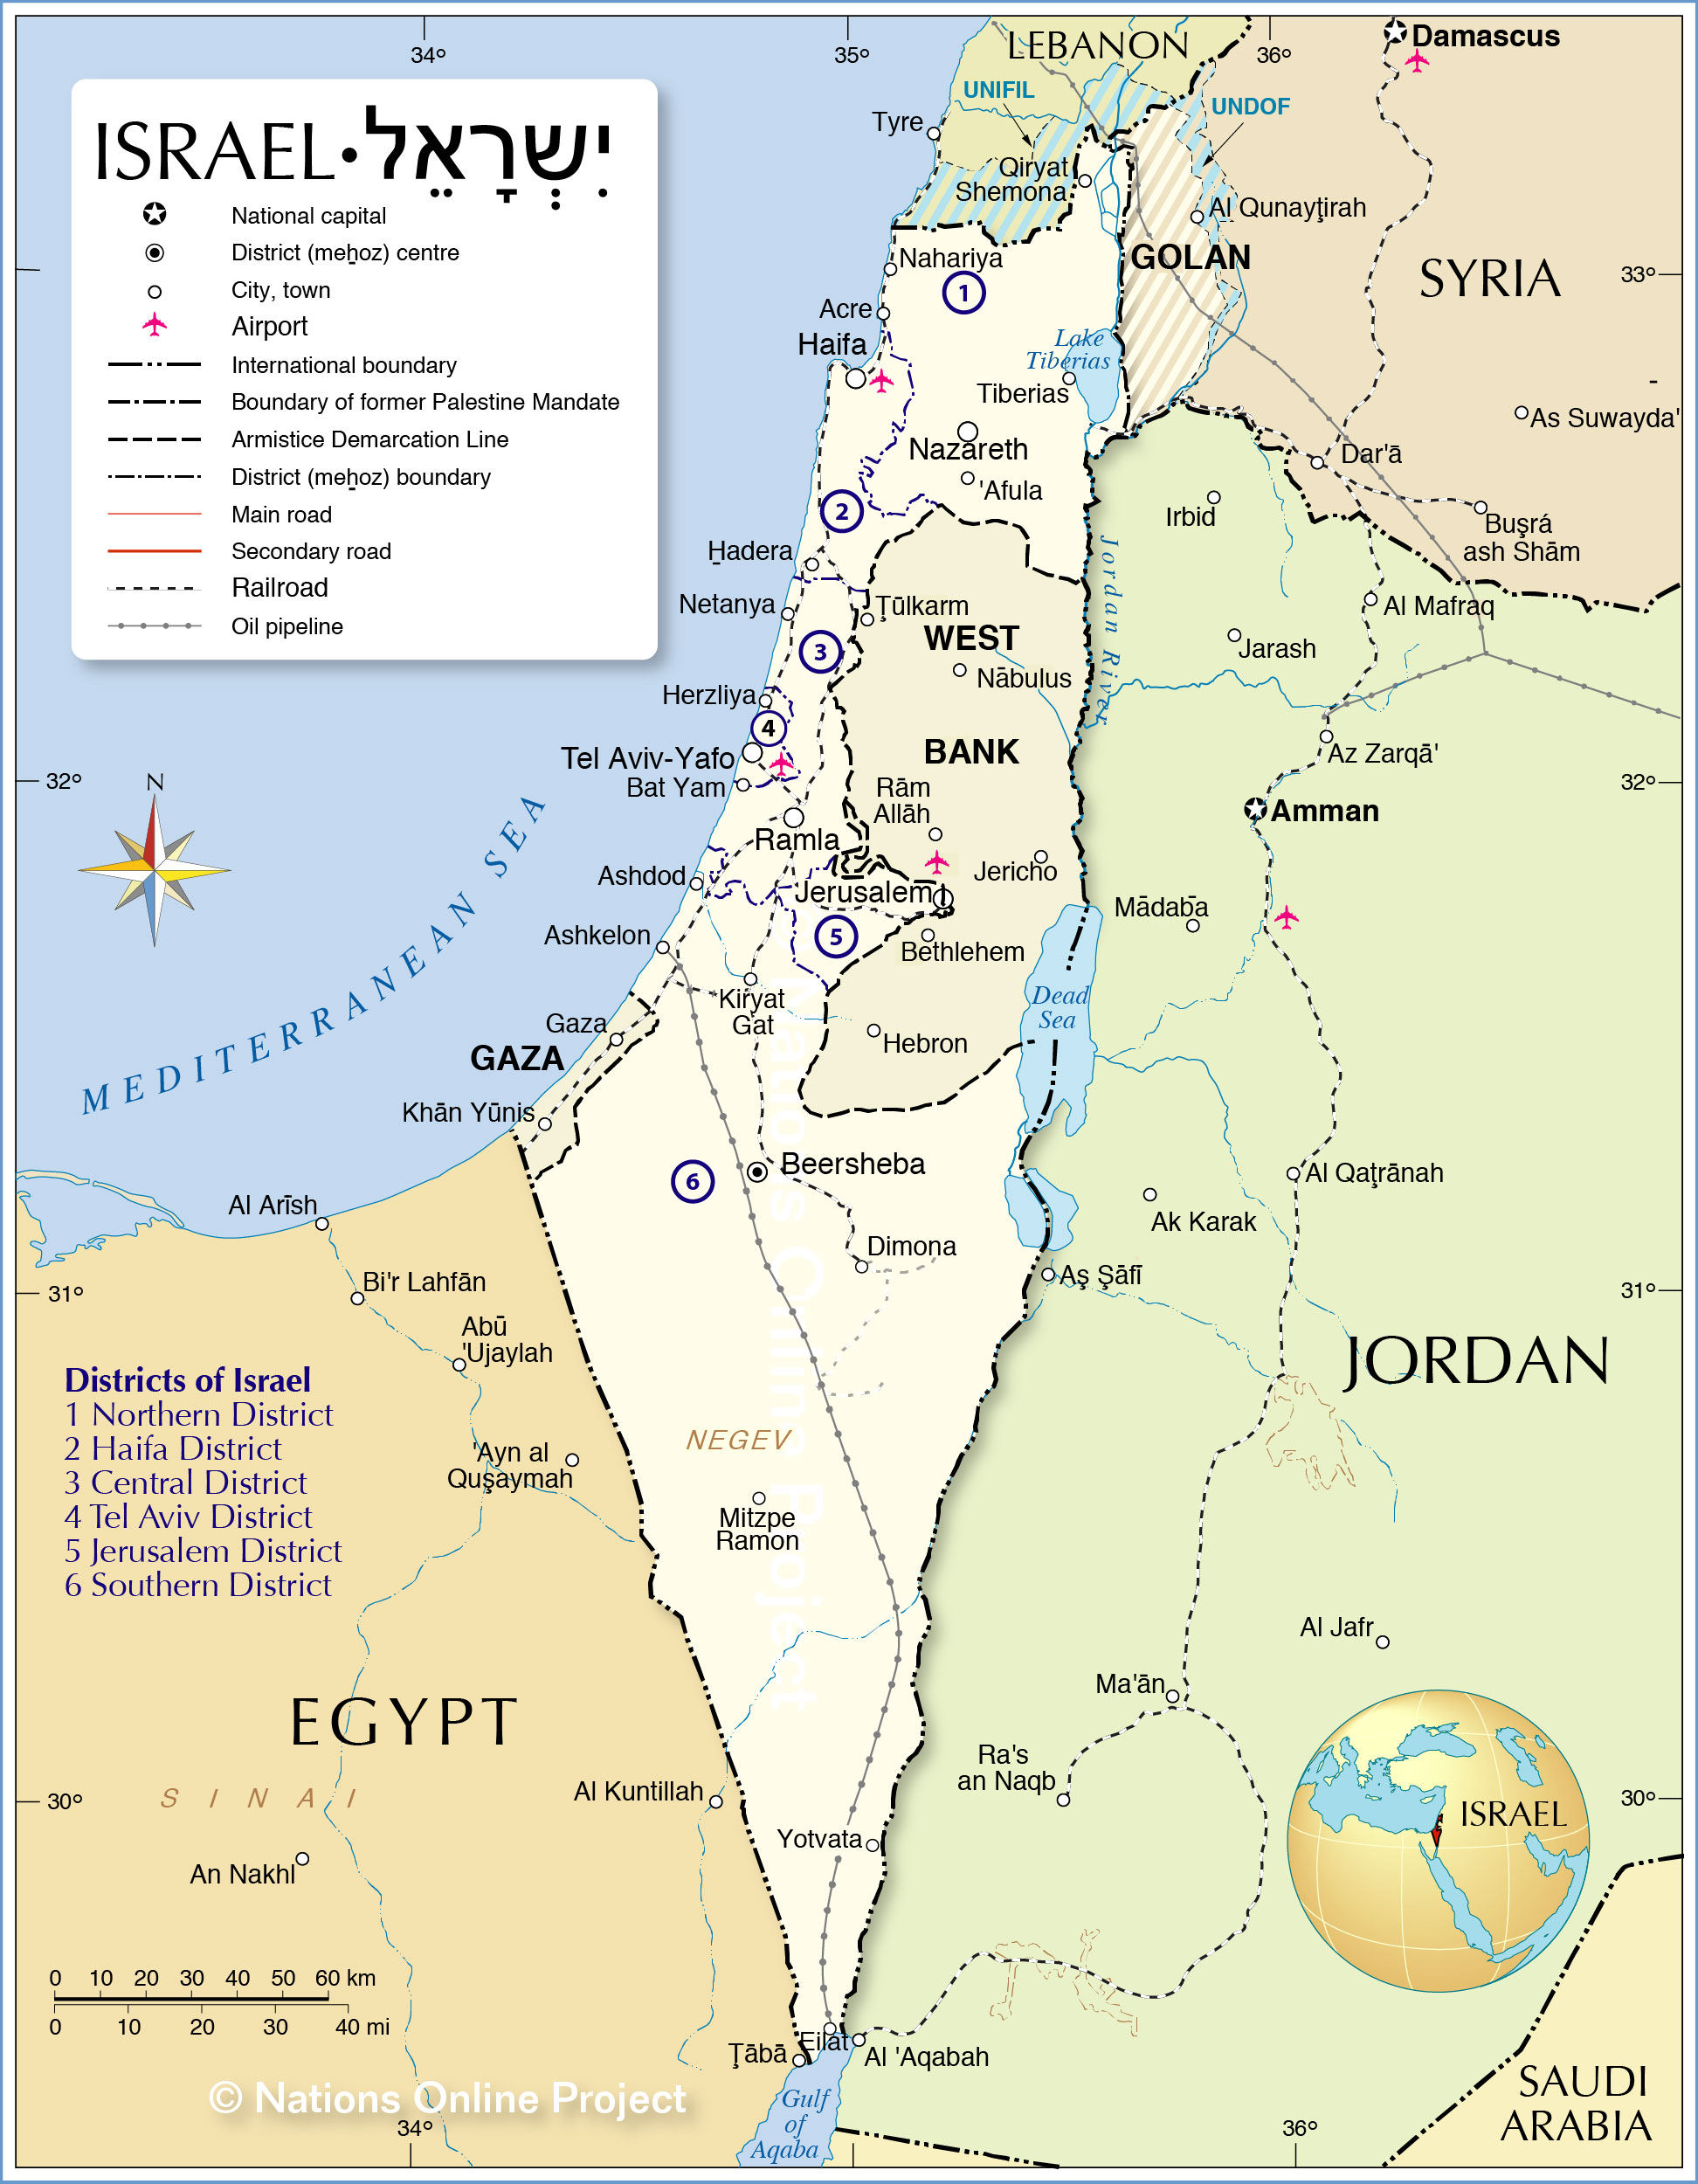 http://www.nationsonline.org/maps/israel_map.jpg